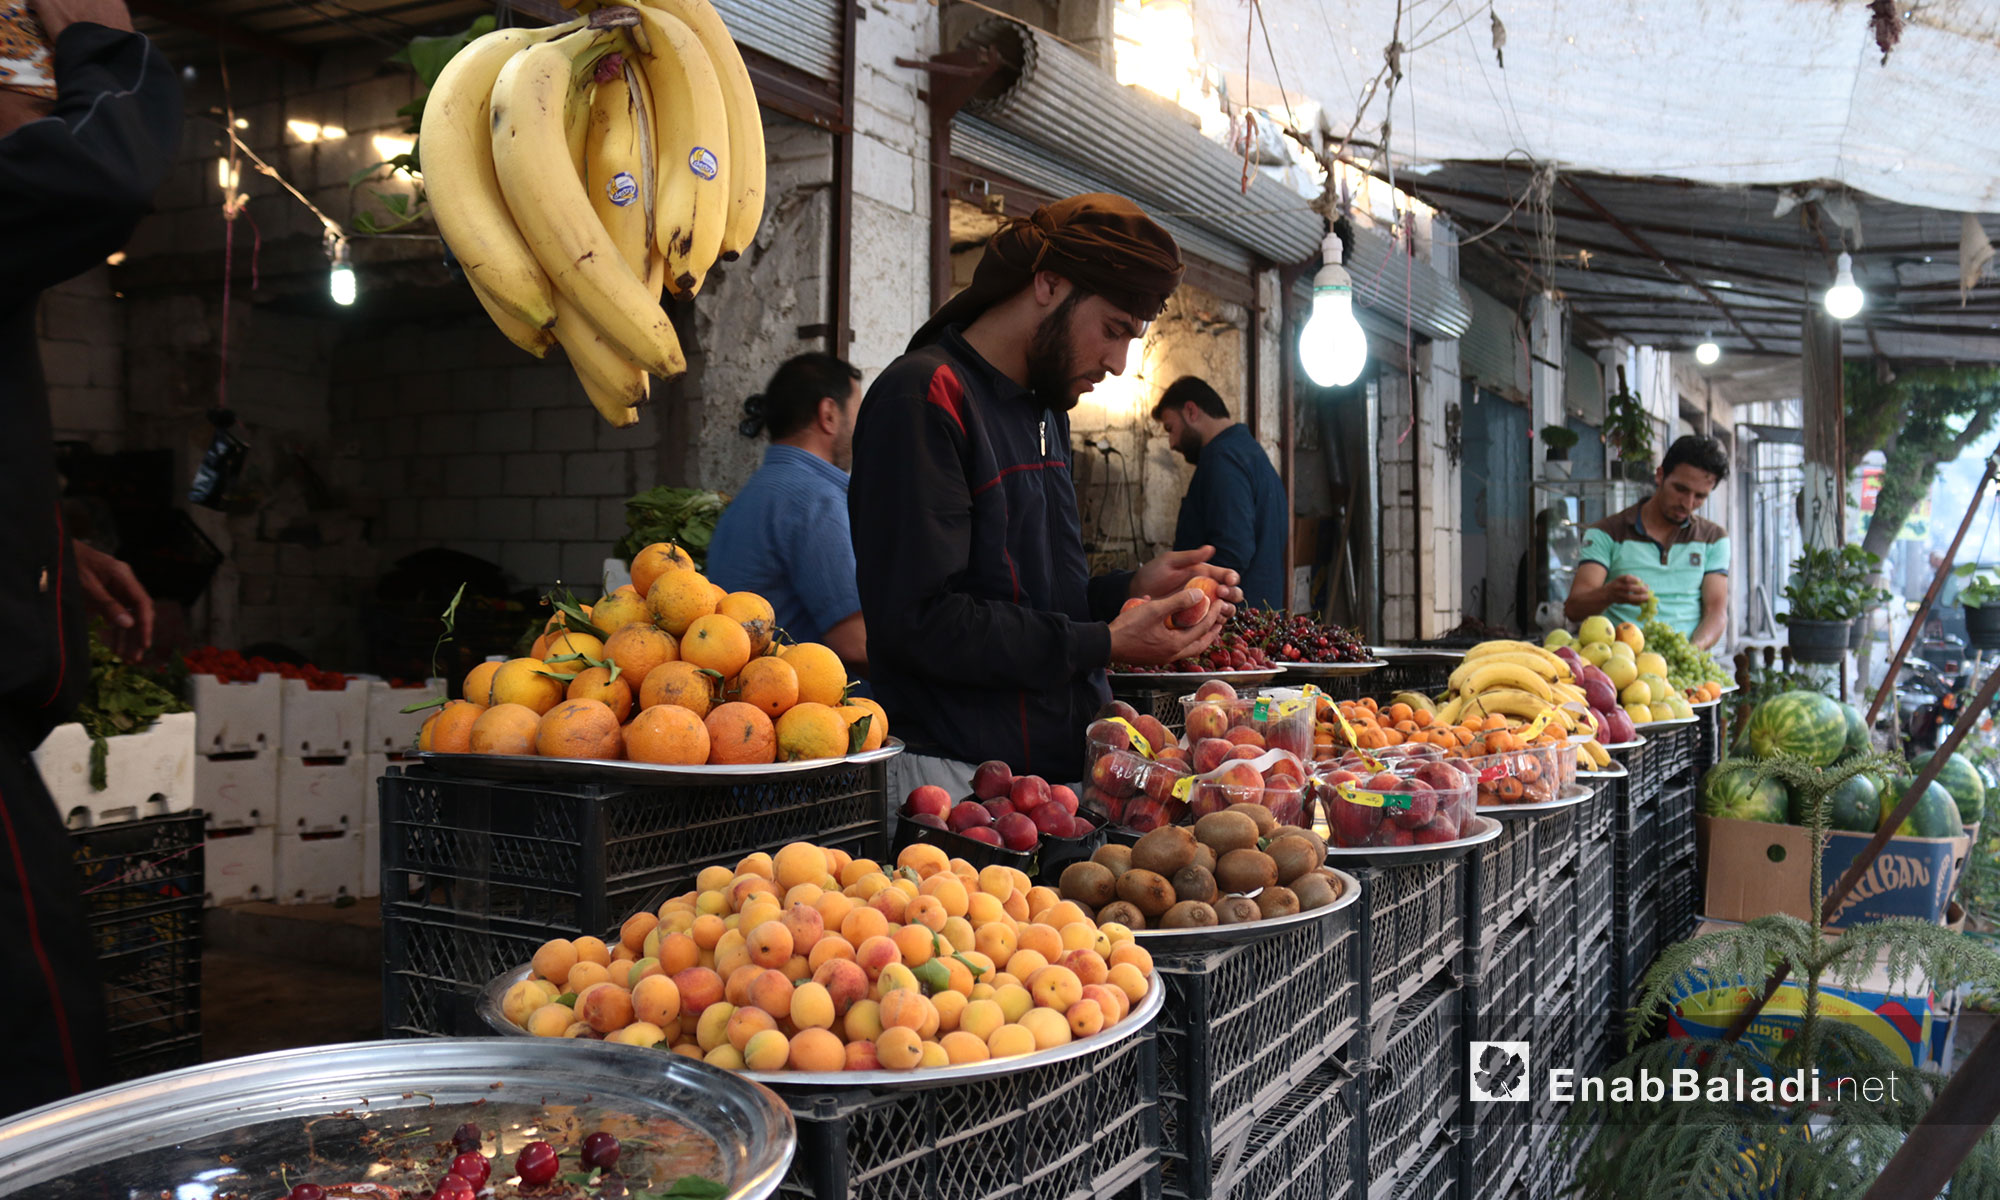 أسواق مدينة كفرنبل في  اليوم الأول من رمضان في إدلب - 17 أيار 2018 (عنب بلدي)